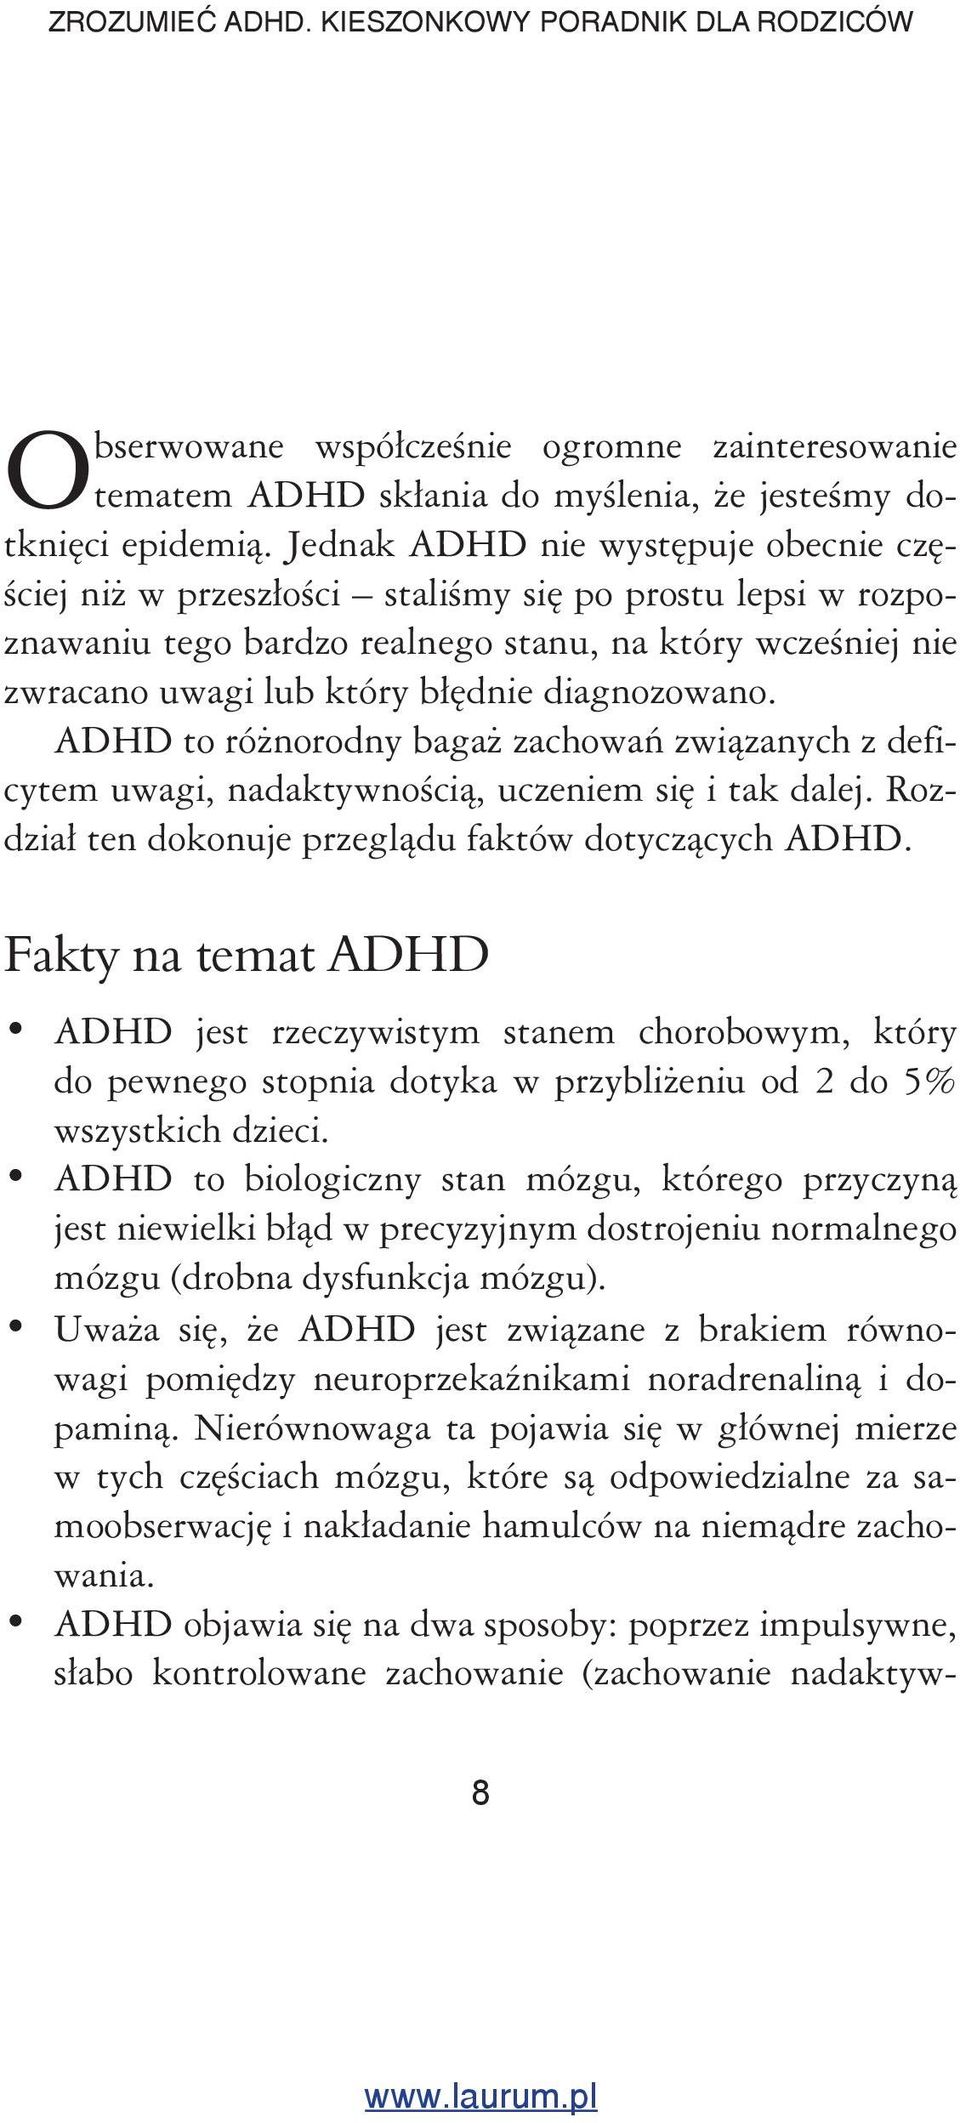 diagnozowano. ADHD to różnorodny bagaż zachowań związanych z deficytem uwagi, nadaktywnością, uczeniem się i tak dalej. Rozdział ten dokonuje przeglądu faktów dotyczących ADHD.